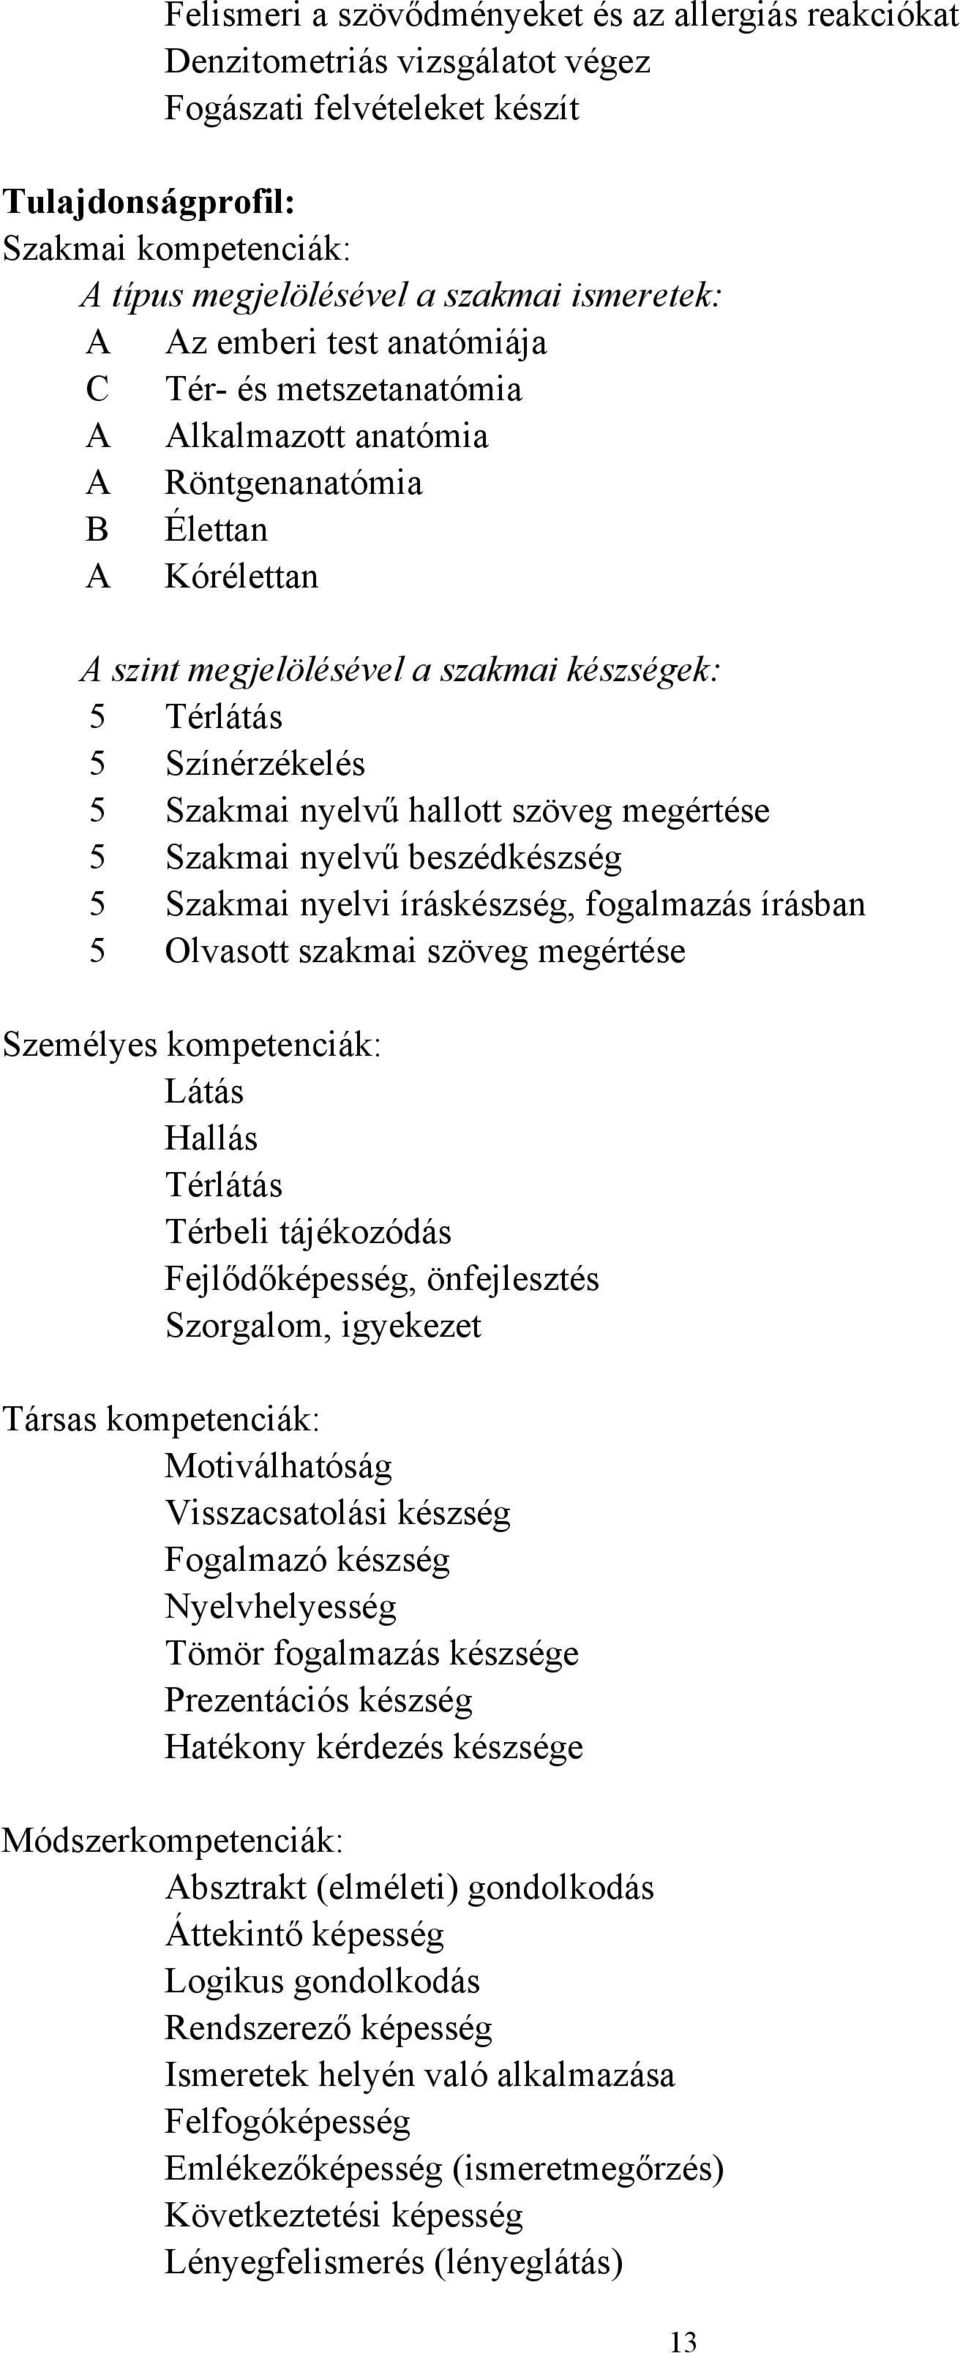 5 Szakmai nyelvű hallott szöveg megértése 5 Szakmai nyelvű beszédkészség 5 Szakmai nyelvi íráskészség, fogalmazás írásban 5 Olvasott szakmai szöveg megértése Személyes kompetenciák: Látás Hallás